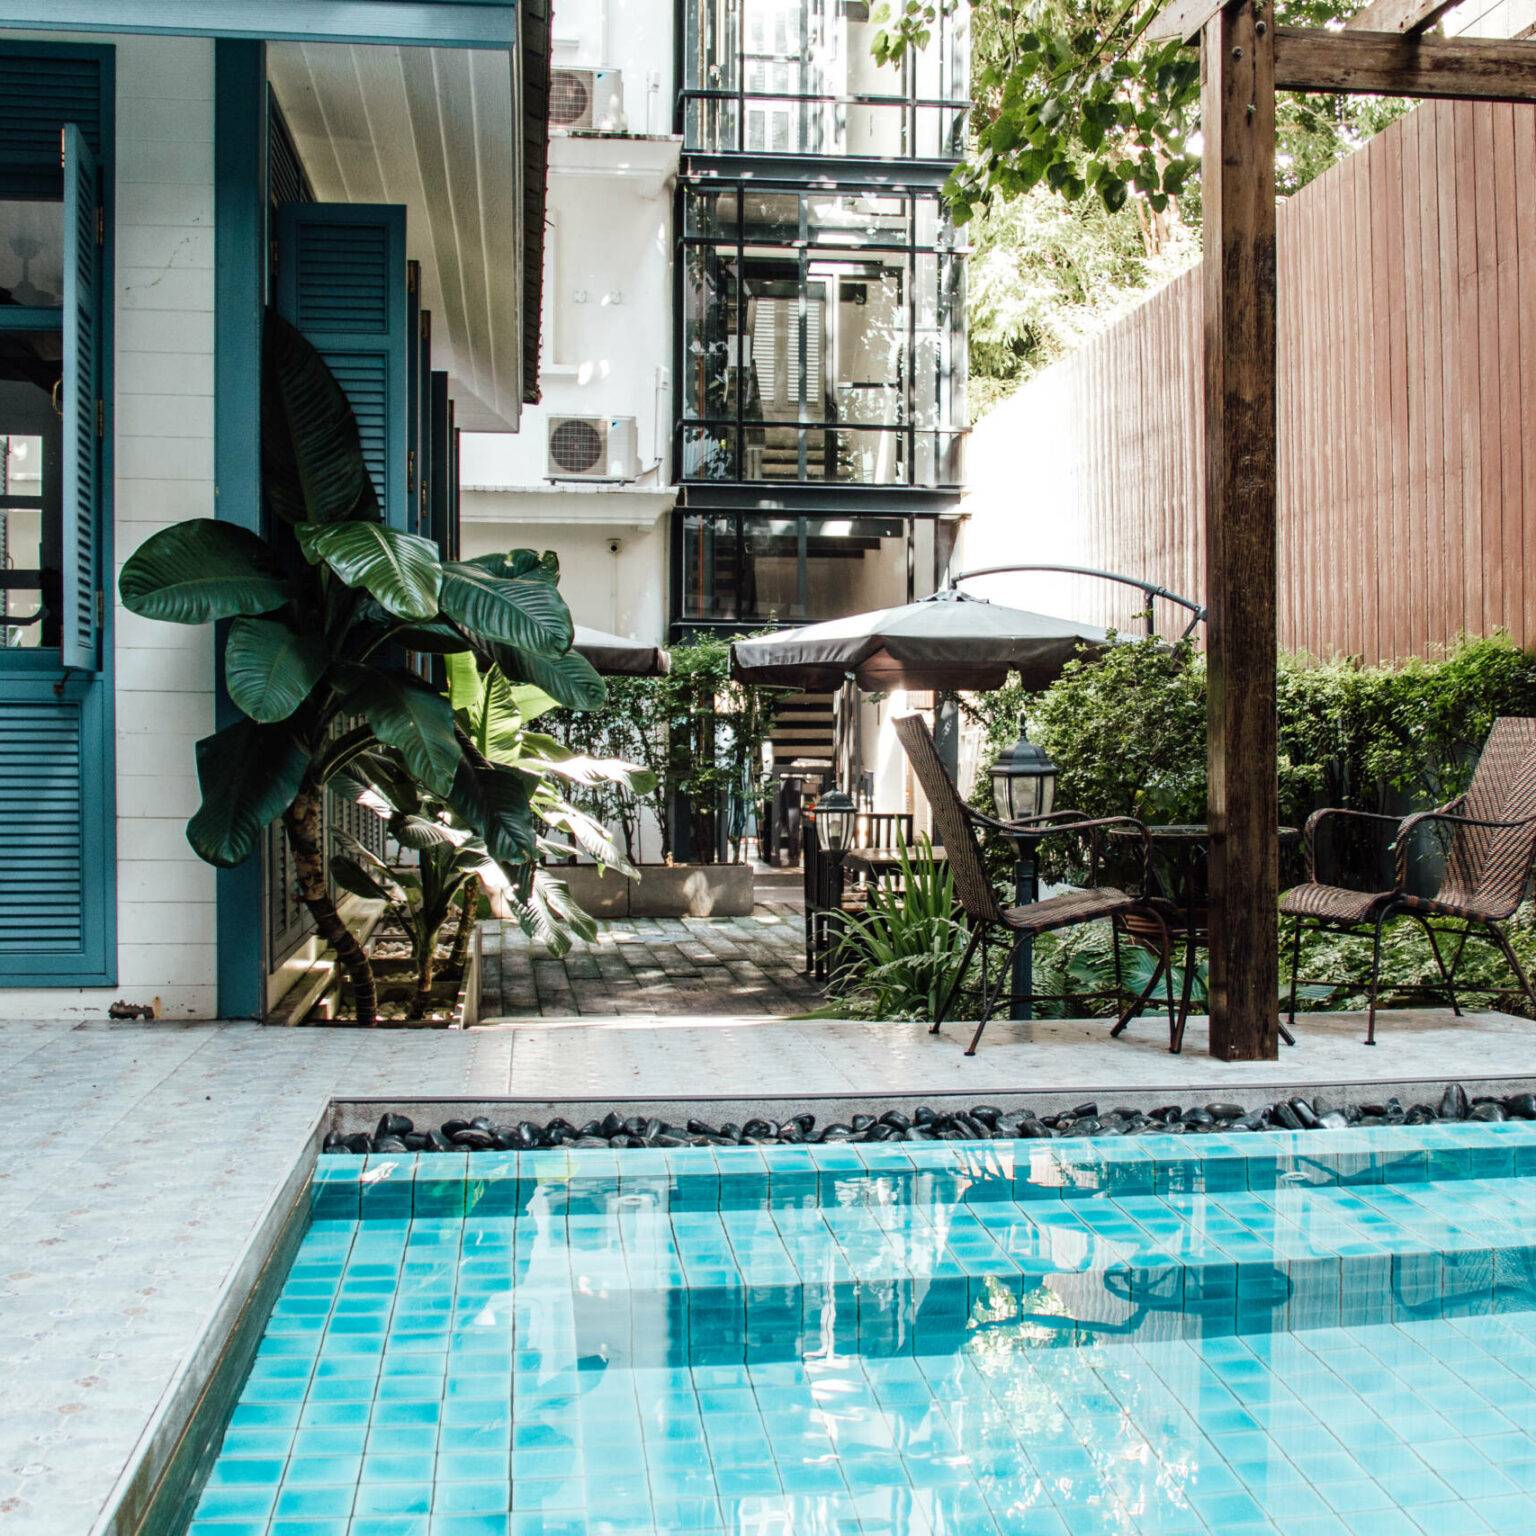 Dschungelartige Pflanzen ragen inmitten eines Hotels mit Pool empor.